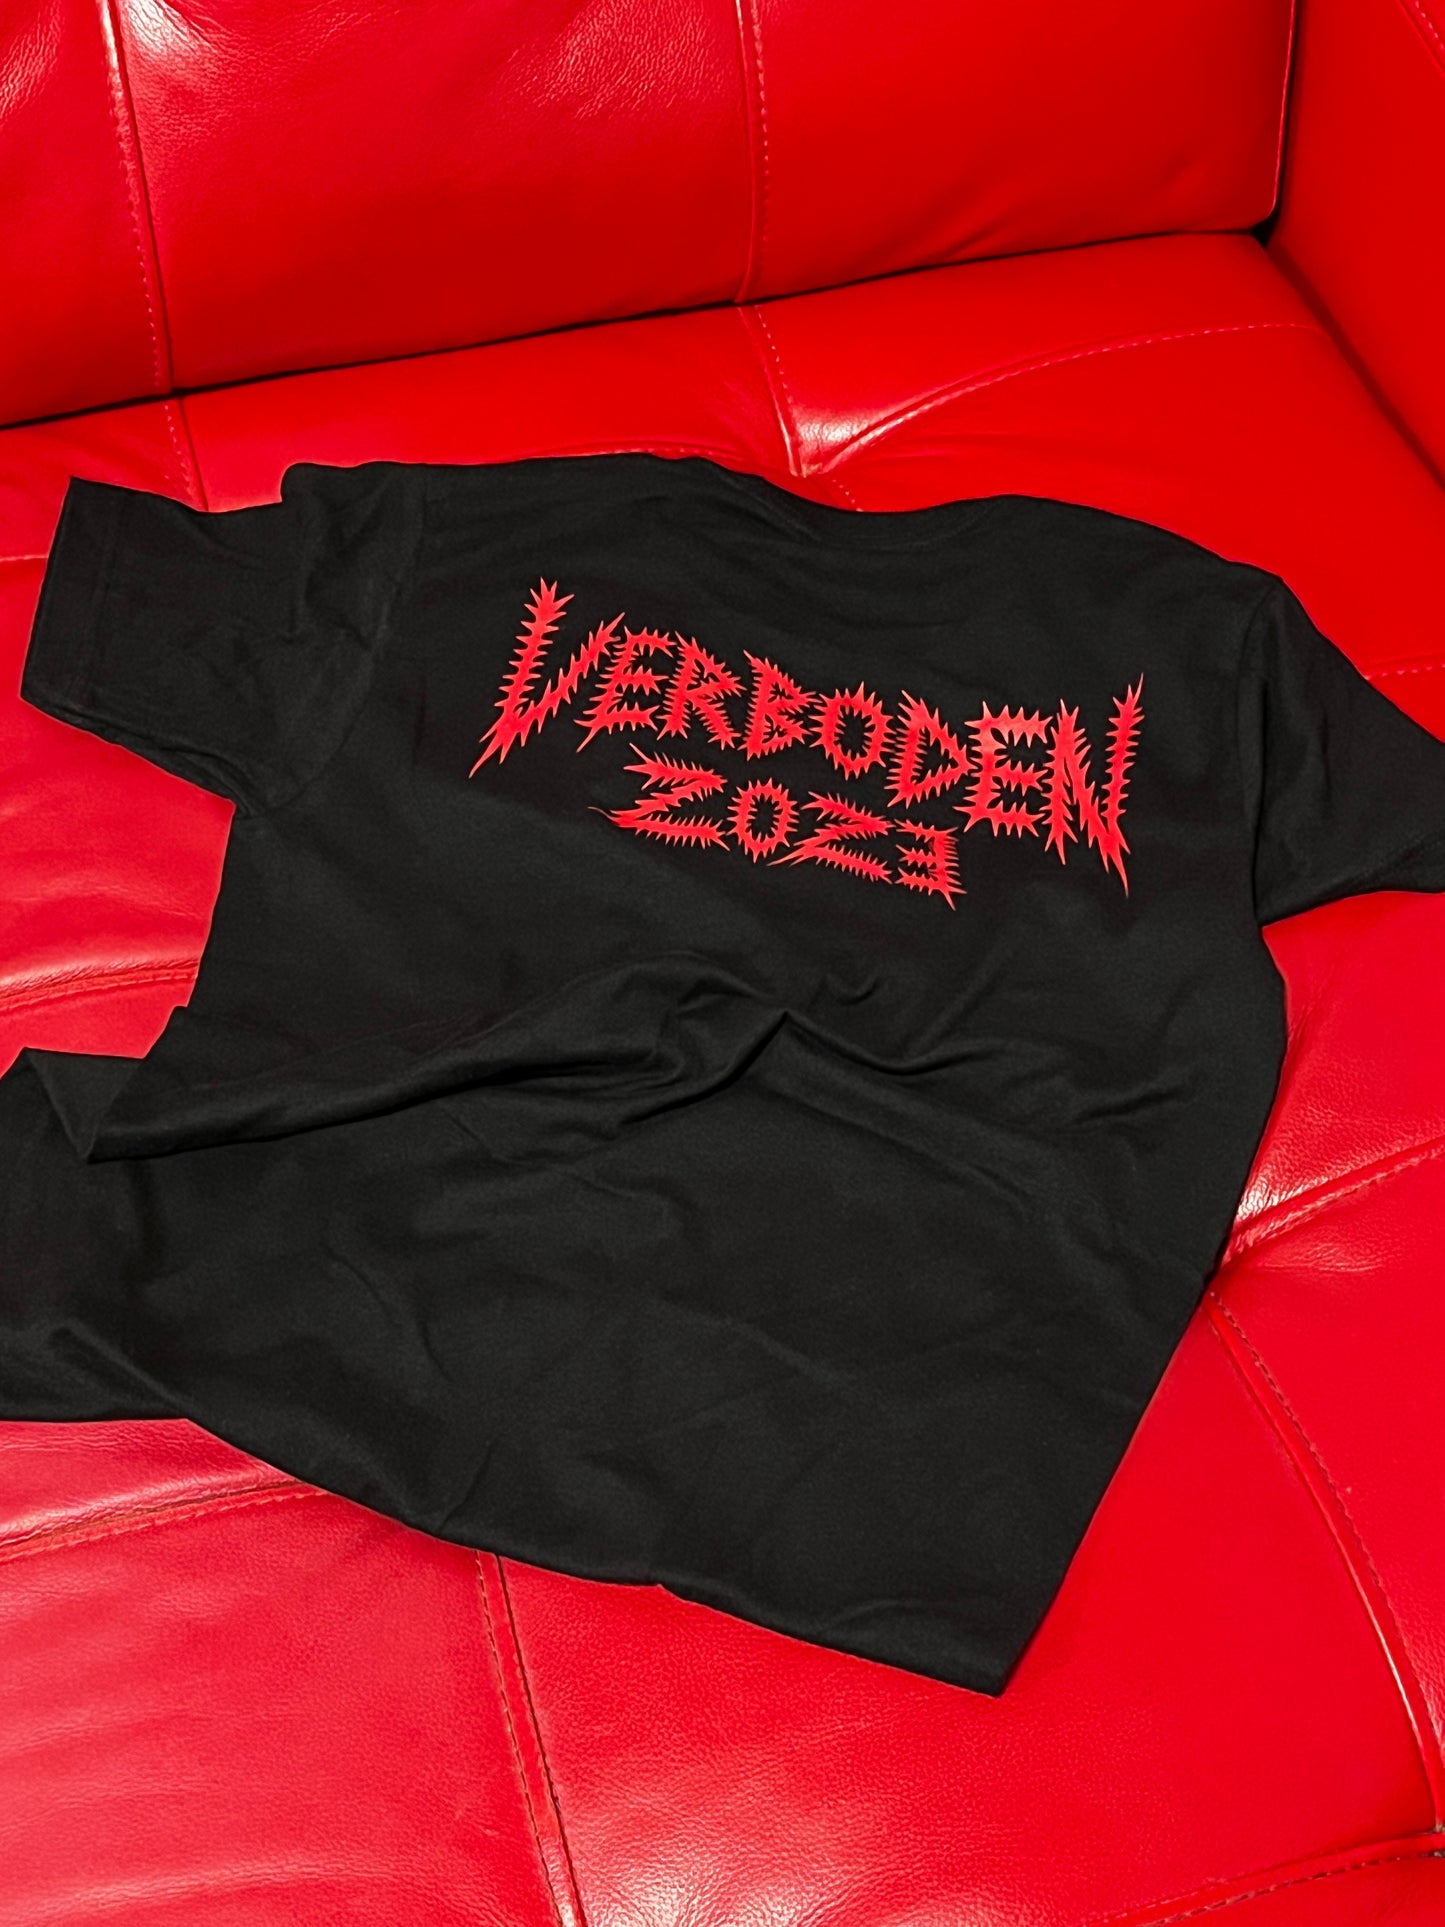 Verboden Shirt (XL-XXL Only)